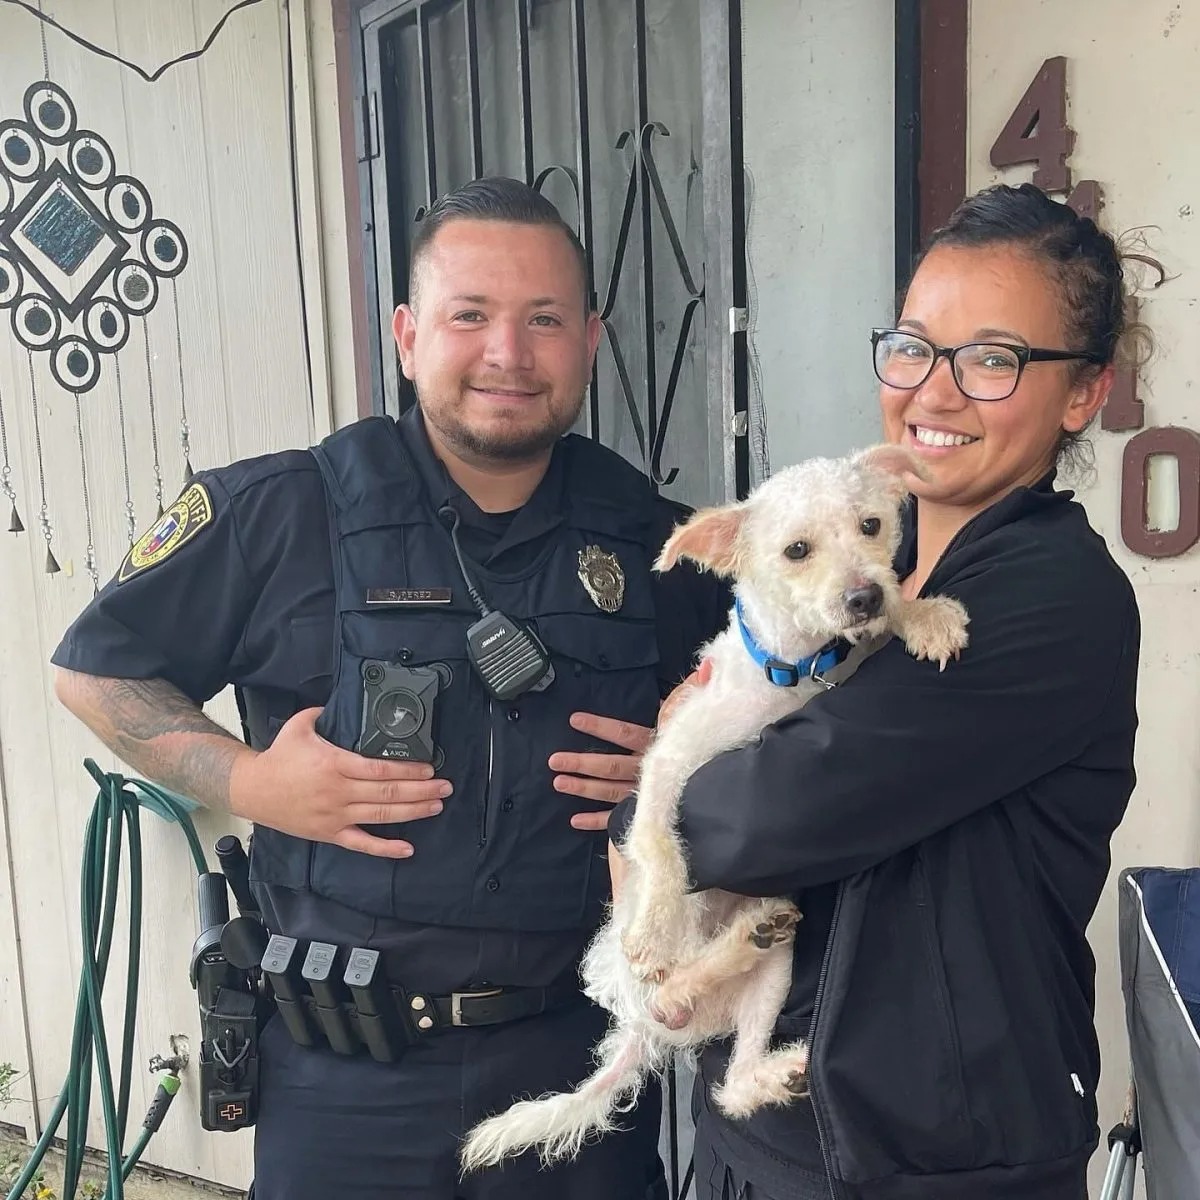 Polizist bringt vermissten Hund nach Hause